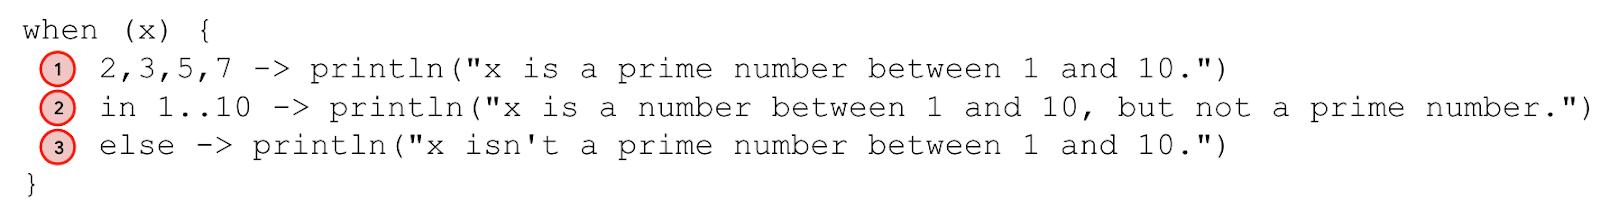 Diagram yang menganotasi pernyataan when. Baris 2,3,5,7 -> println("x is a prime number between 1 and 10.") dianotasi sebagai kasus 1. Baris in 1..10 -> println("x is a number between 1 and 10, but not a prime number.") dianotasi sebagai kasus 2. Baris else -> println("x isn't a prime number between 1 and 10.") dianotasikan sebagai kasus 3. 